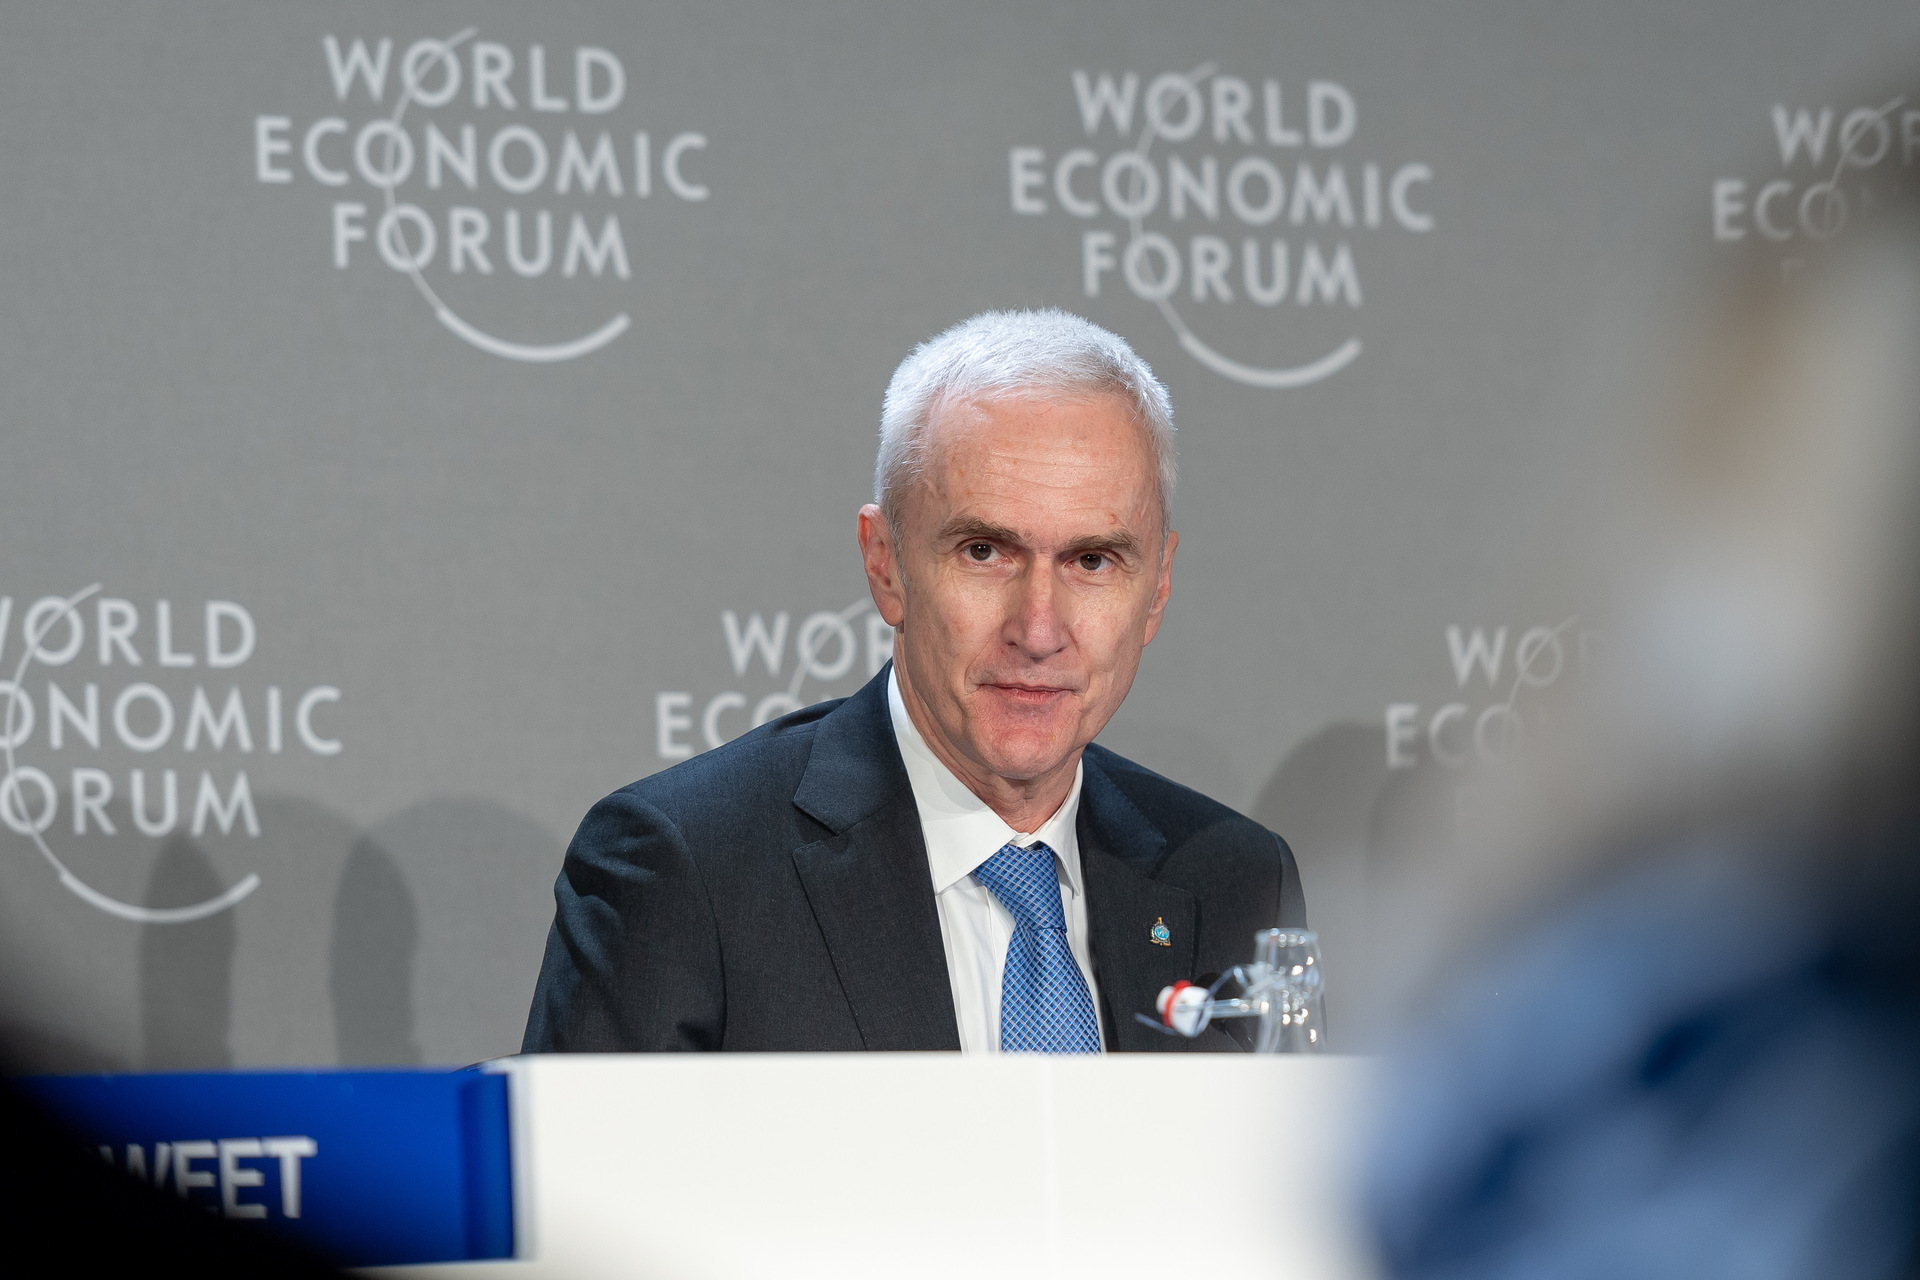 Cibersegurança: a apresentação da edição de 2023 do "Global Cybersecurity Outlook" no Fórum Econômico Mundial de Davos: a intervenção de Jürgen Stock, Secretário-Geral da INTERPOL